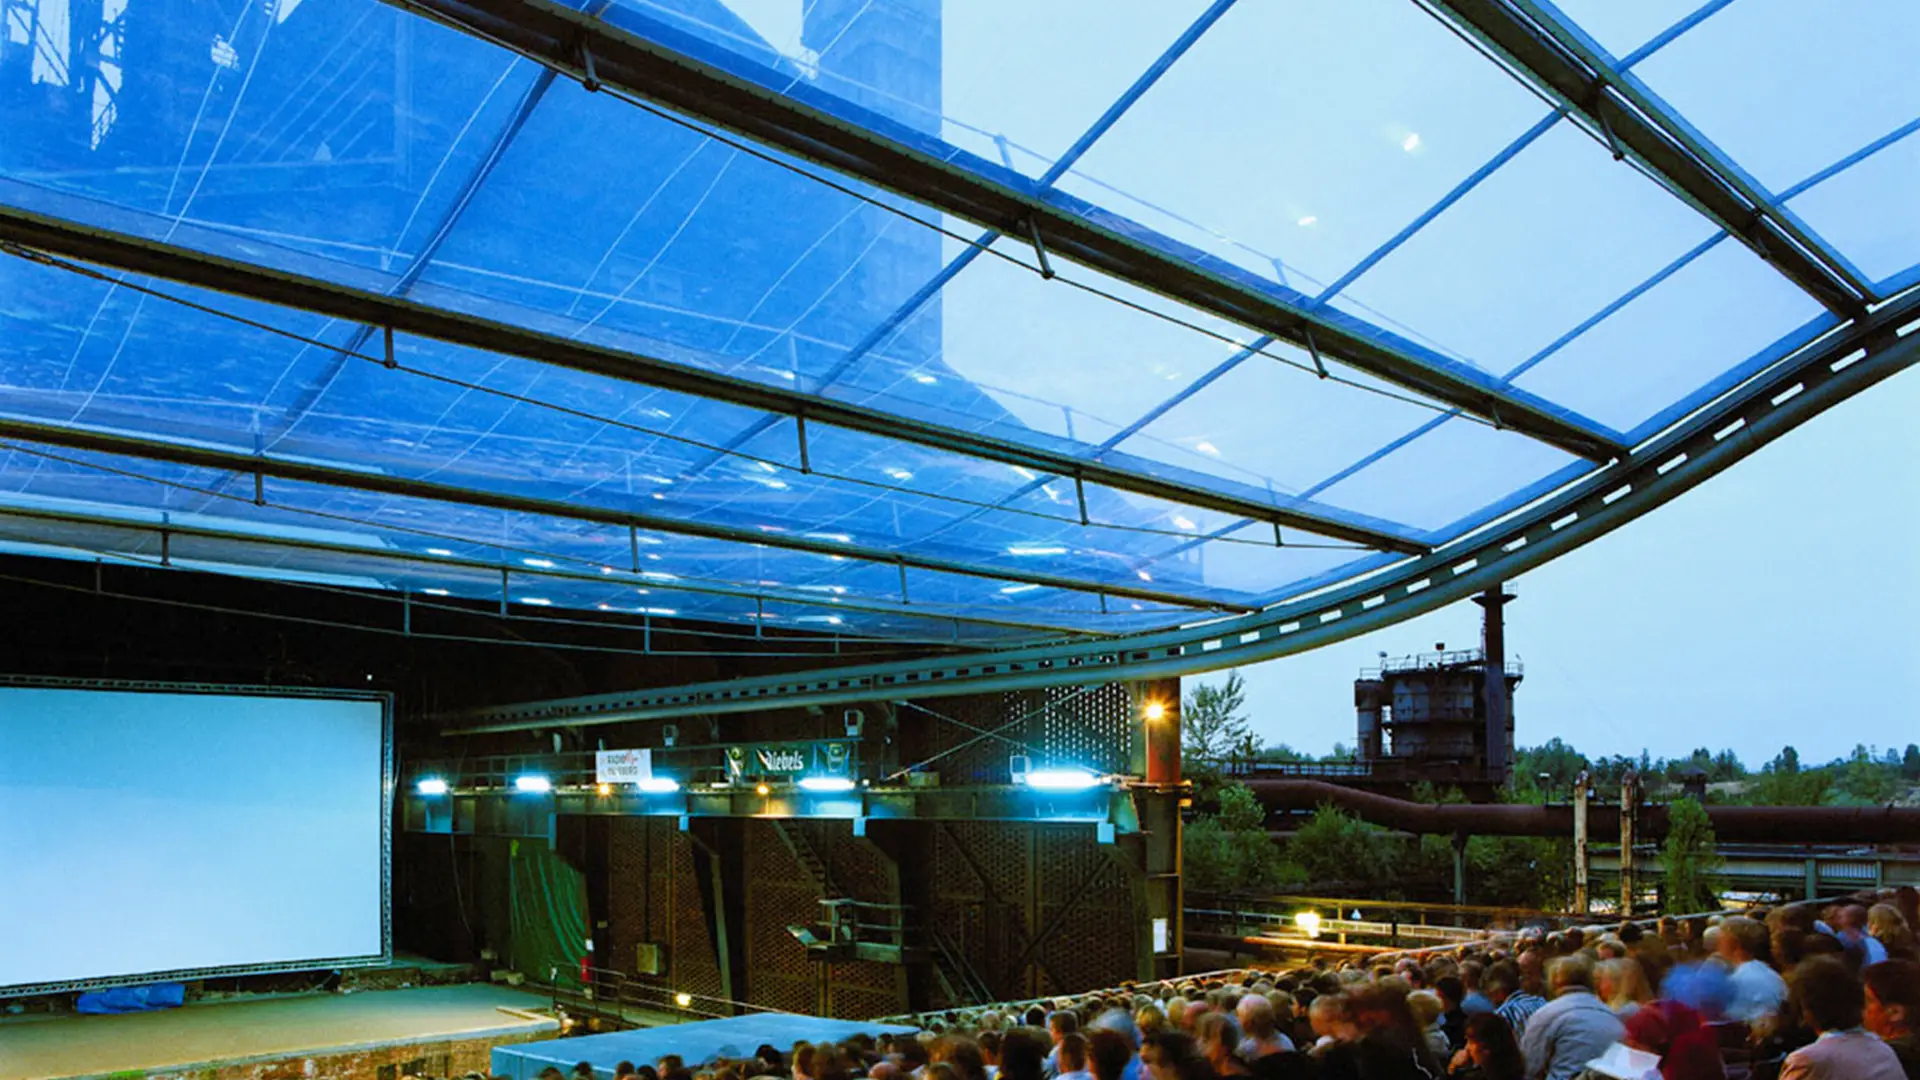 Bei der Open-Air-Bühne Gießhalle in Duisburg sind zwei Drittel der Tribüne mit einem beweglichen Texlon® ETFE-Vordach überdacht.